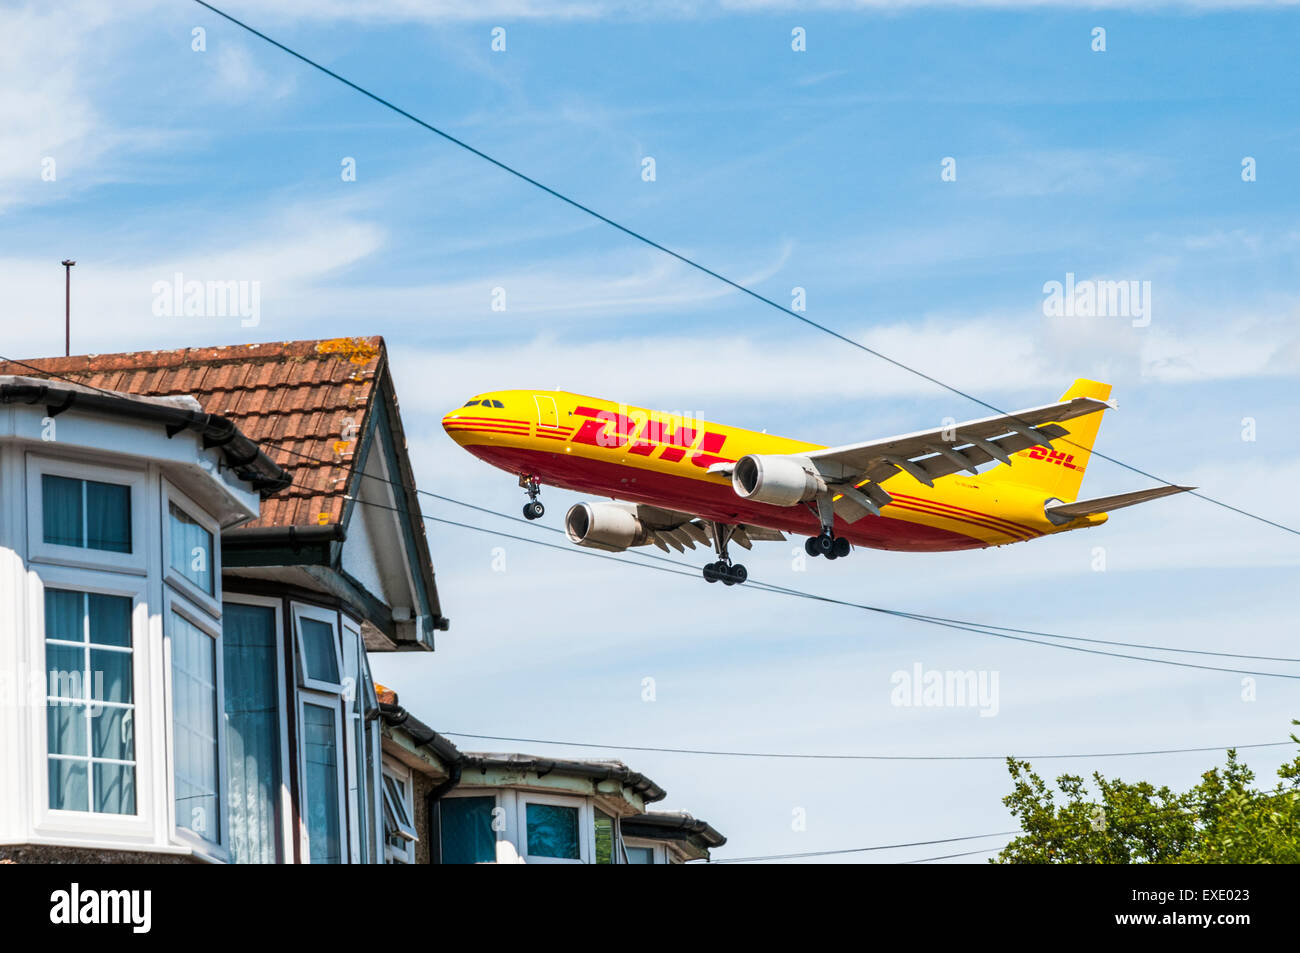 Vue latérale d'un Airbus A300 DHL cargo passant à basse altitude au-dessus des maisons qui entourent l'aéroport London Heathrow Banque D'Images